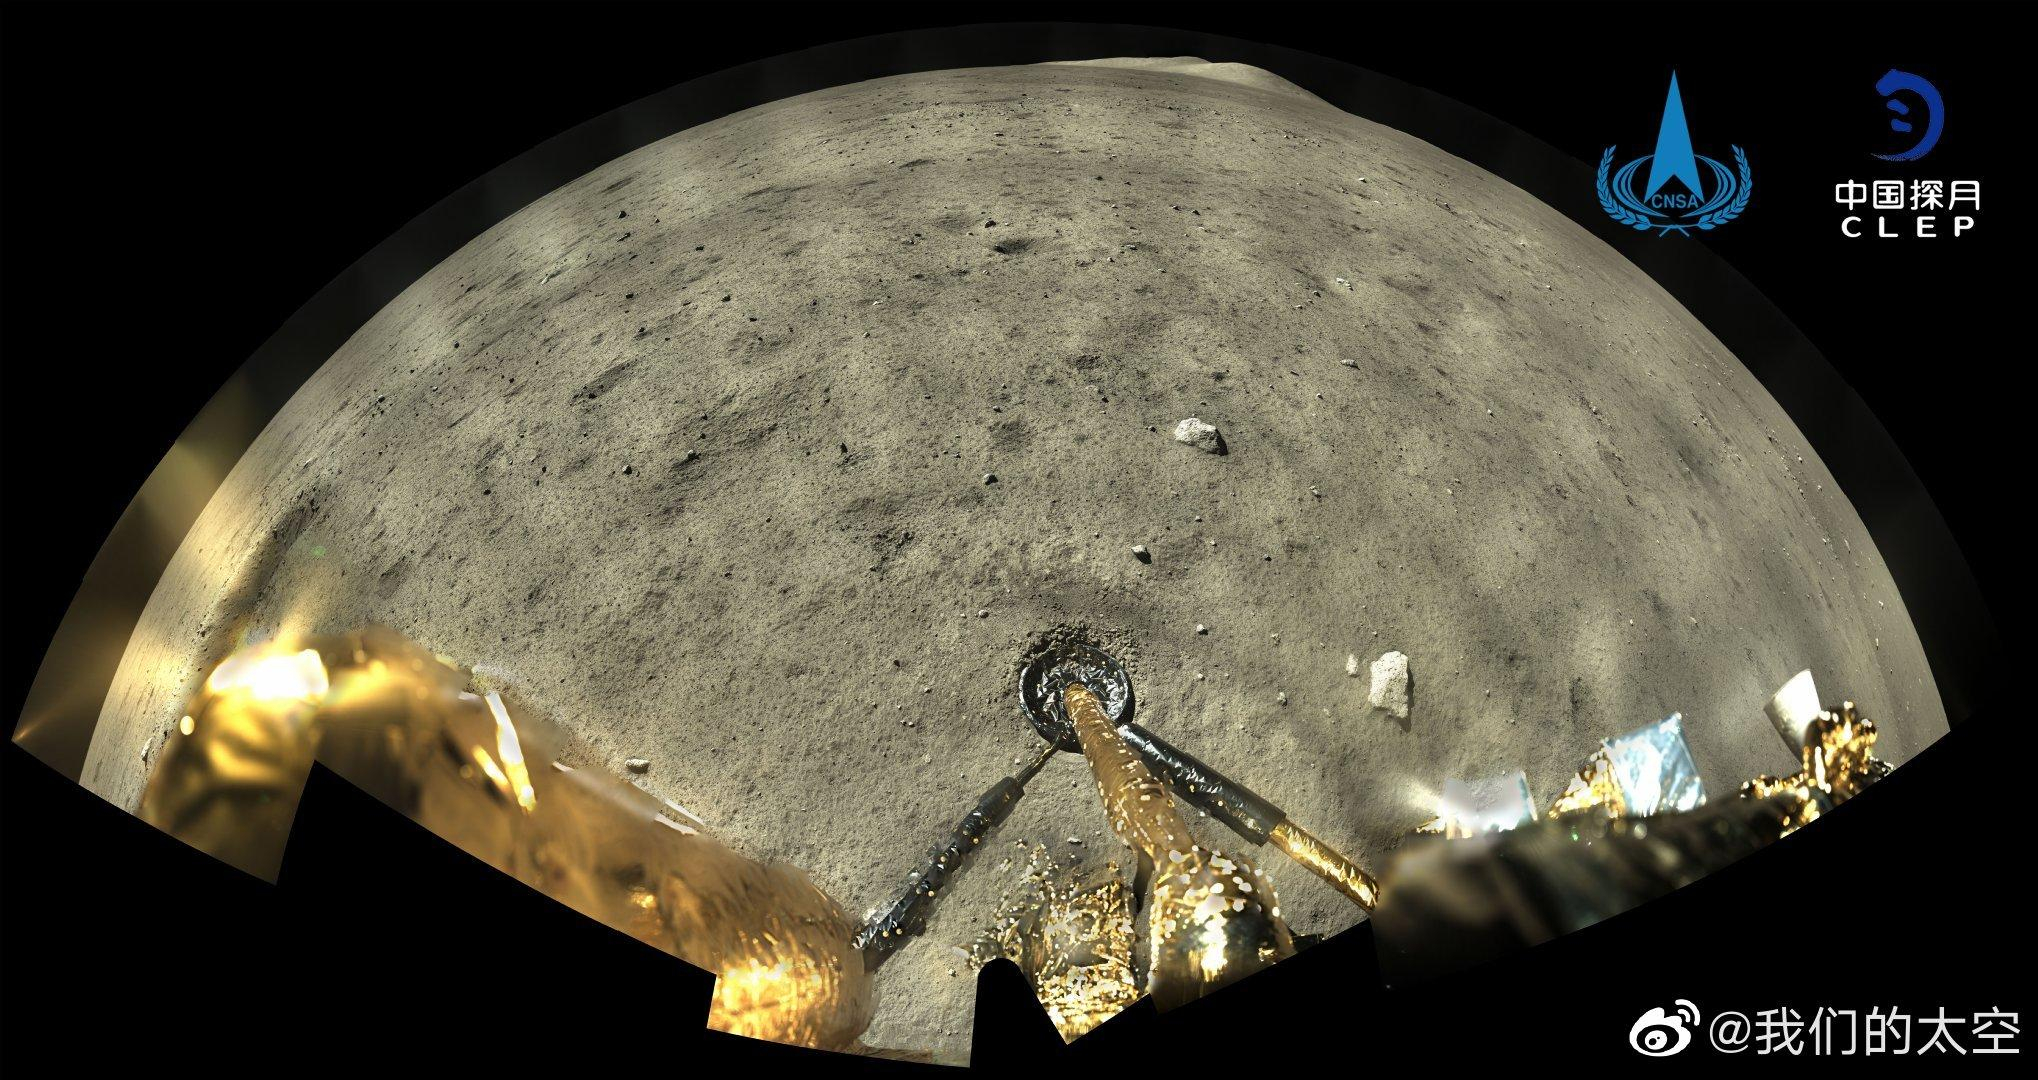 Частини апарату Чан'е-5 скинули на Місяць, щоб не засмічувати космос